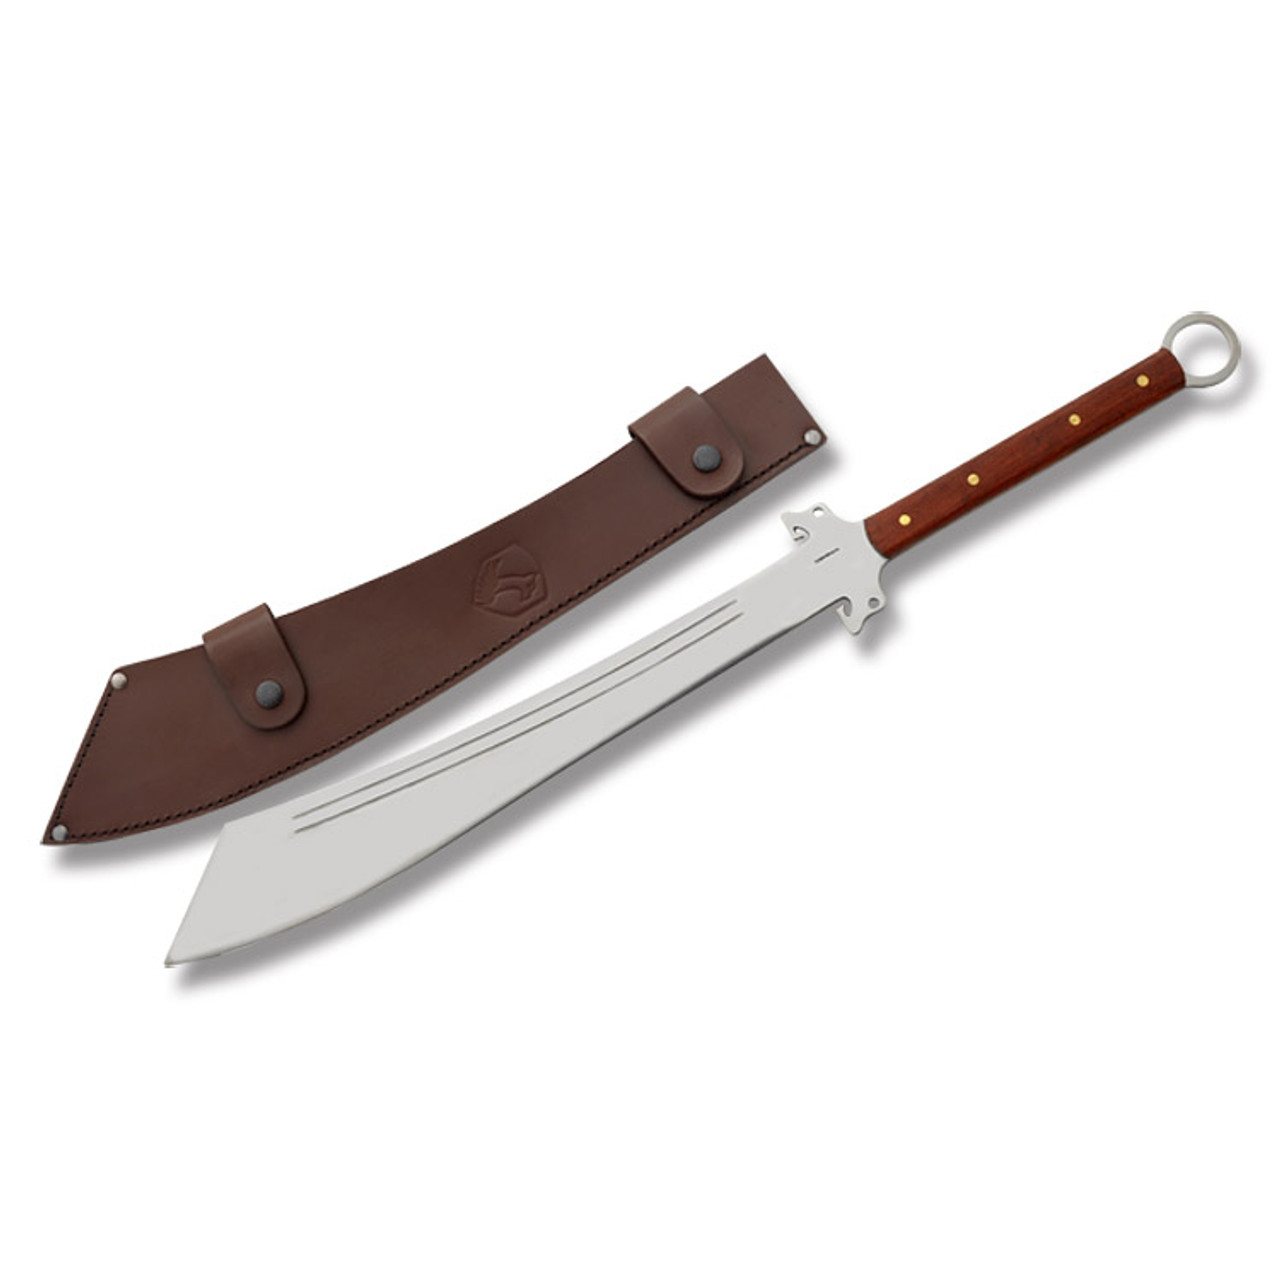 Condor Dynasty Dadao Sword - Smoky Mountain Knife Works